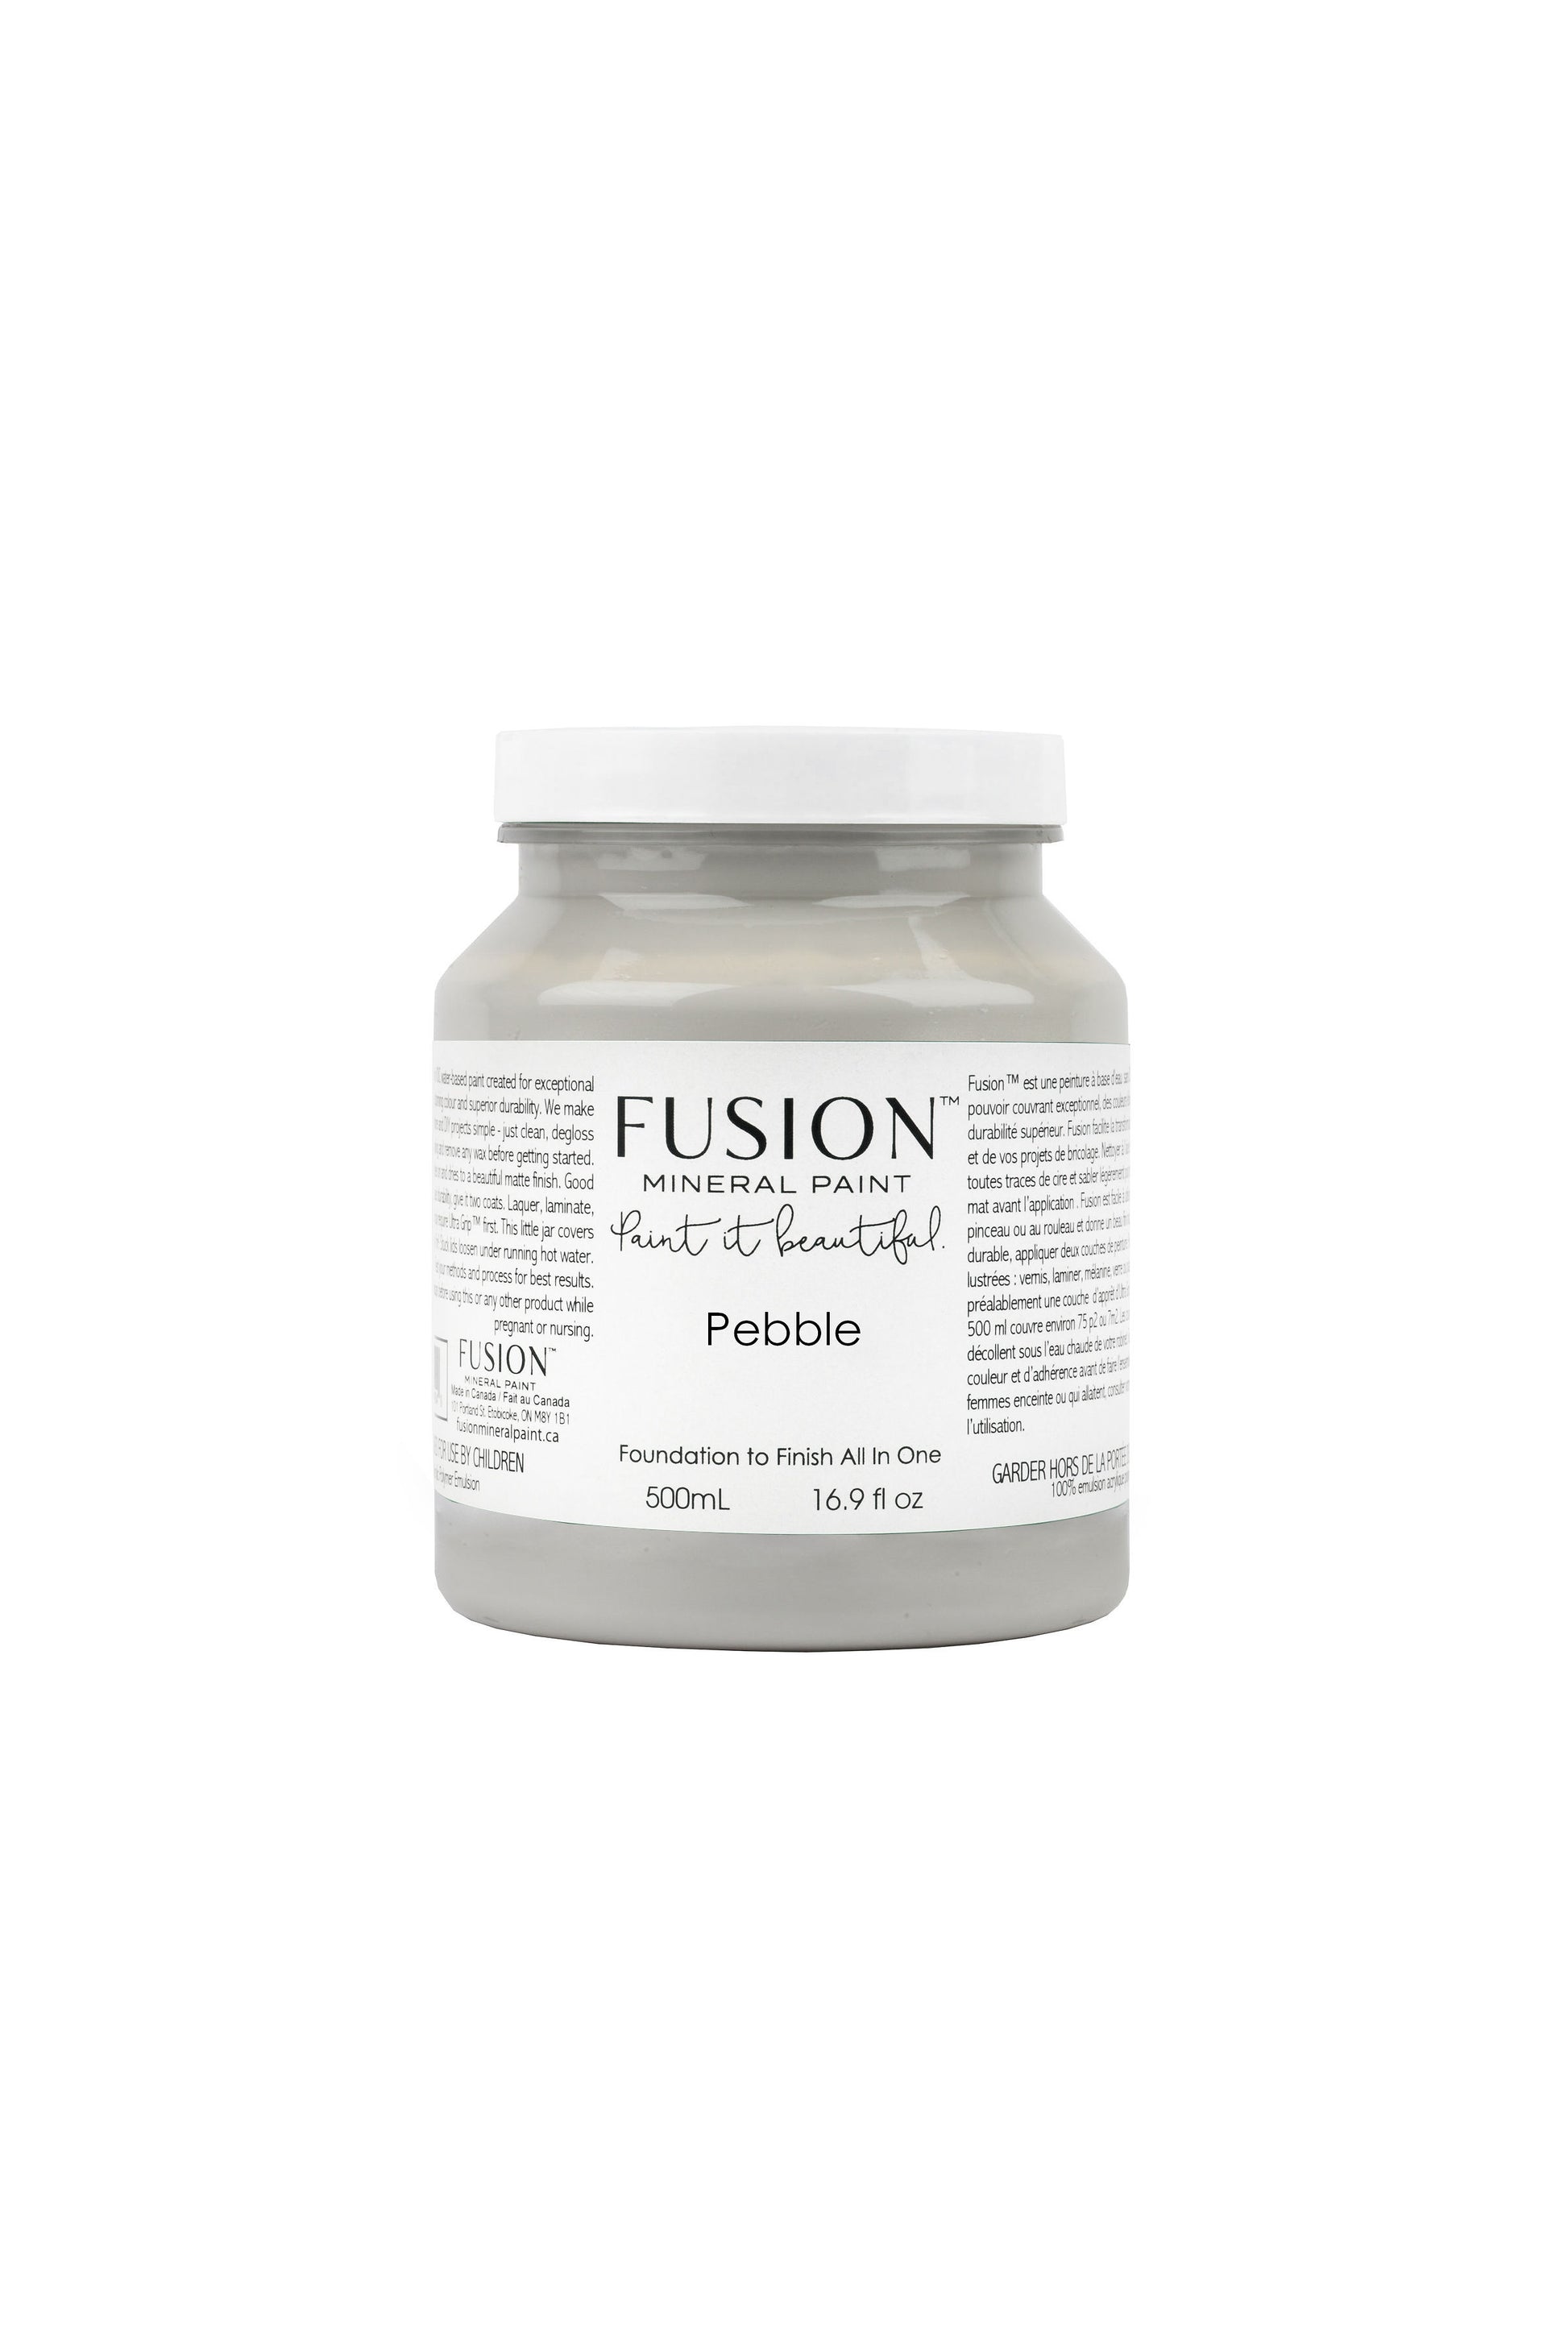 Pebble Fusion Mineral Paint, Soft Grey Paint Color| 500ml Pint Size